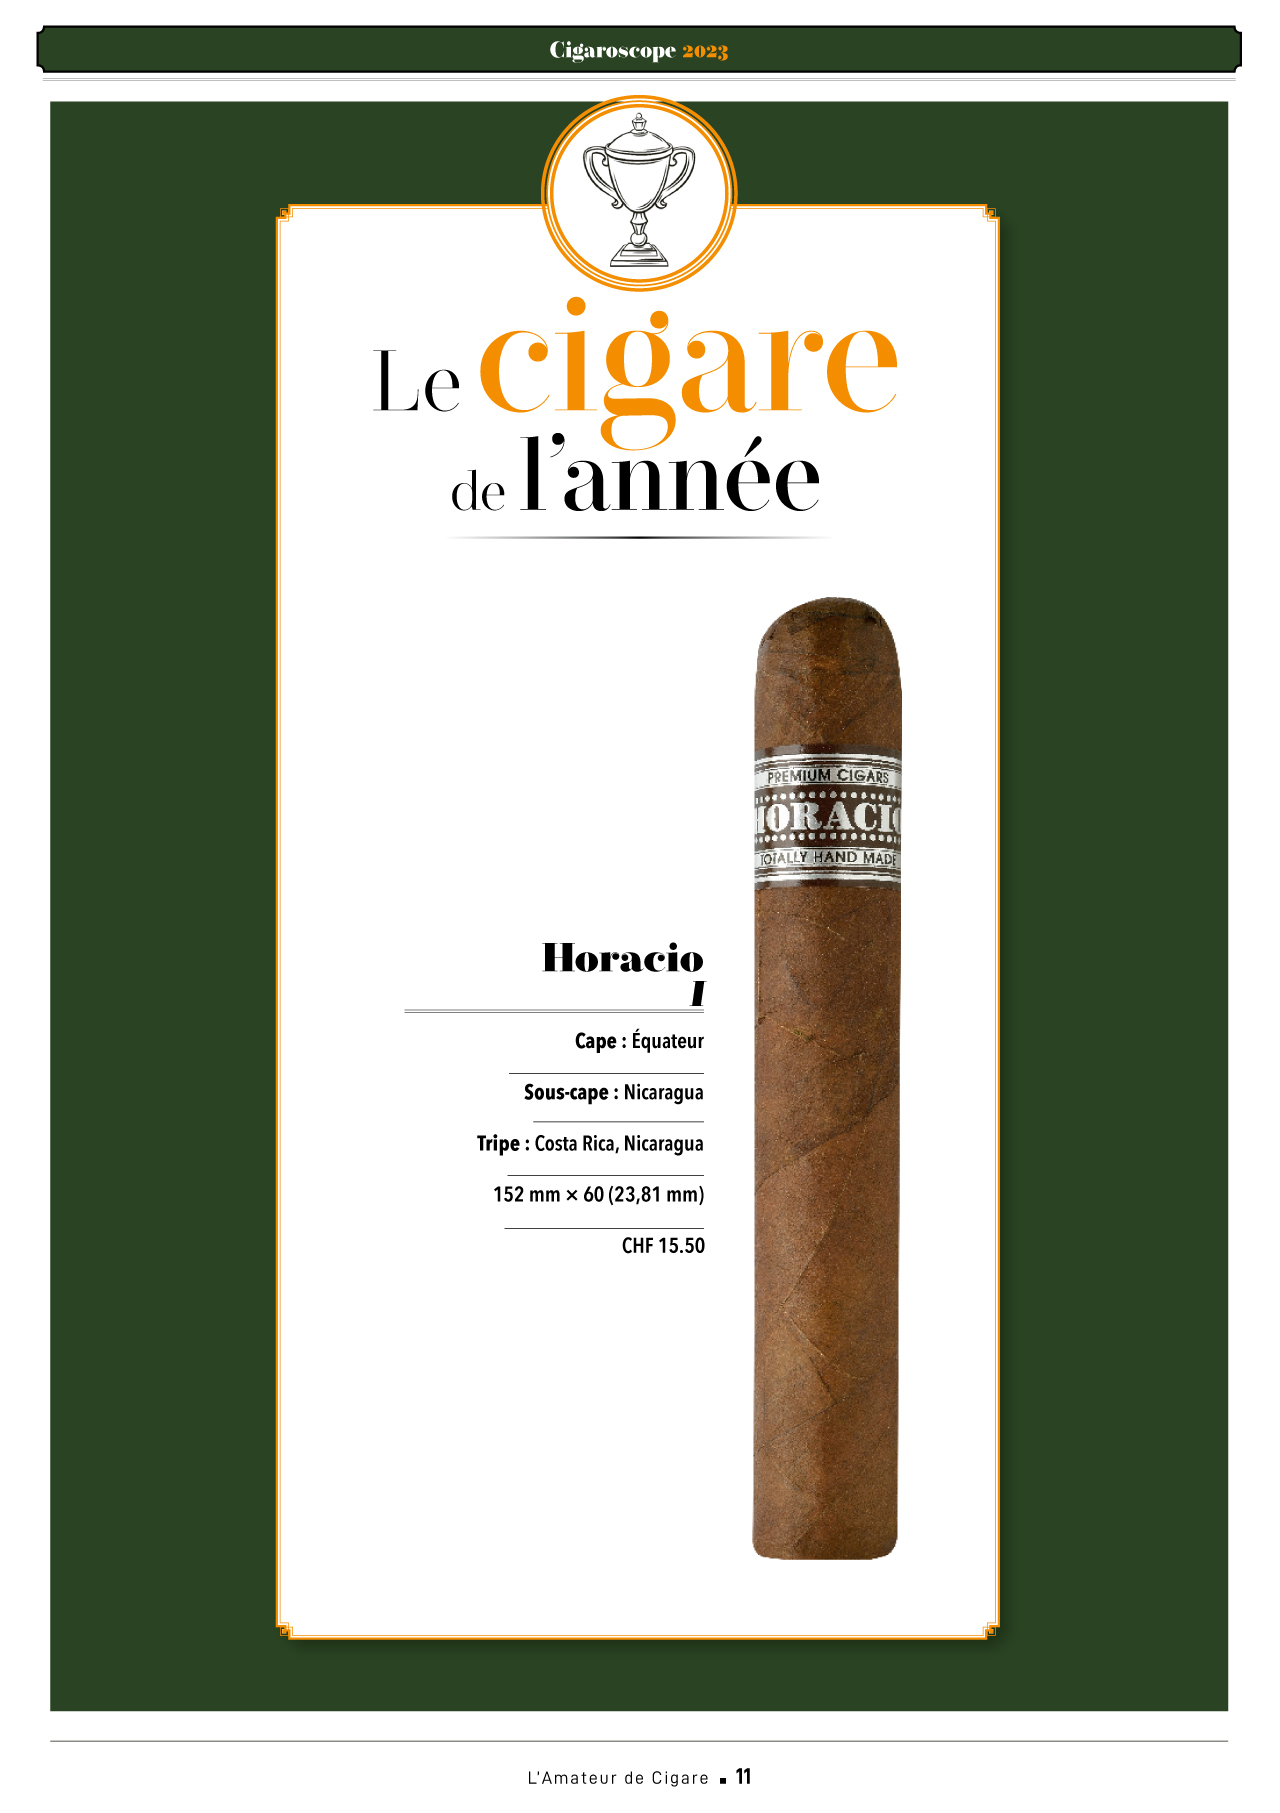 L’Amateur de cigares – Horacio 1, eletto sigaro dell’anno 2023 da Cigaroscope